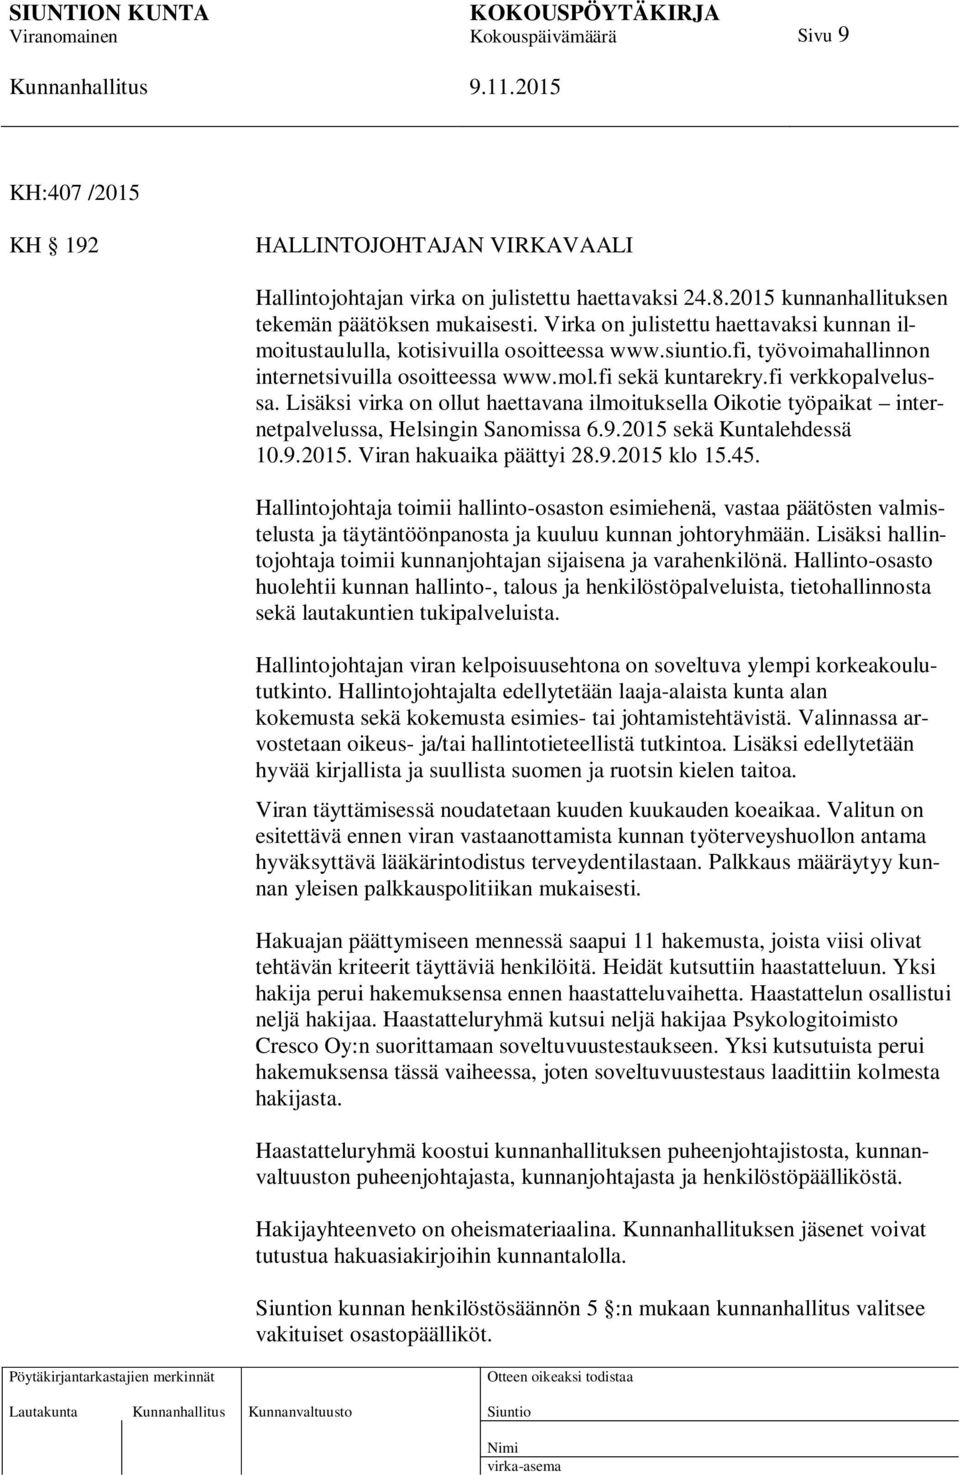 Lisäksi virka on ollut haettavana ilmoituksella Oikotie työpaikat internetpalvelussa, Helsingin Sanomissa 6.9.2015 sekä Kuntalehdessä 10.9.2015. Viran hakuaika päättyi 28.9.2015 klo 15.45.